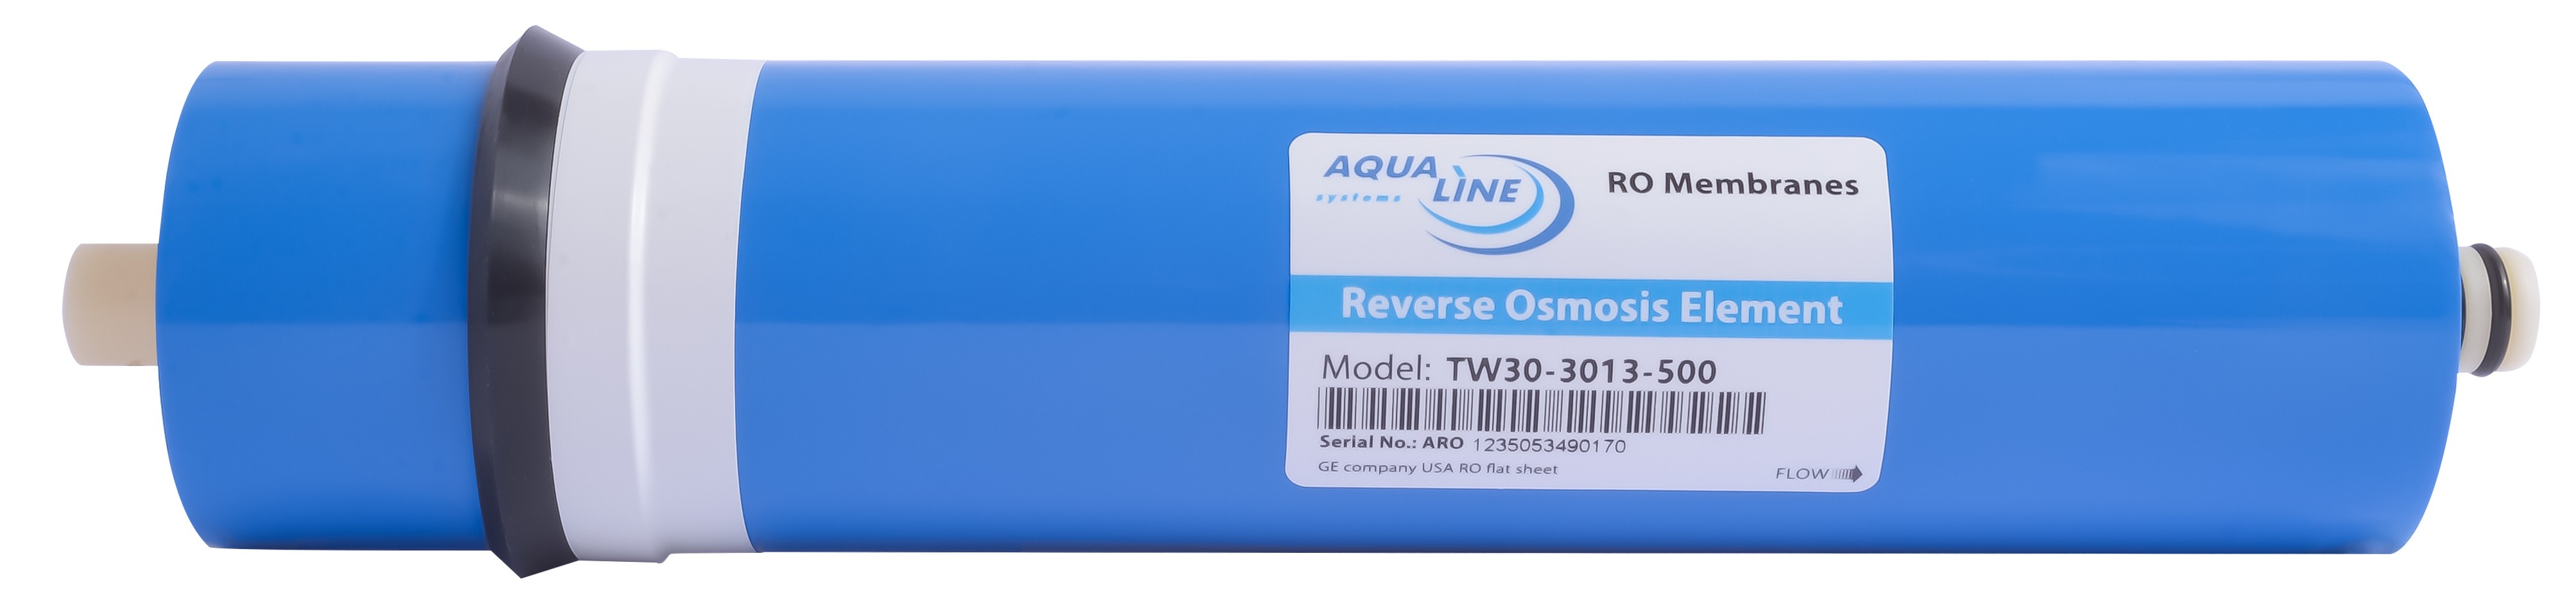 Отзывы мембрана aqualine для обратного осмоса Aqualine 3013 500GPD в Украине